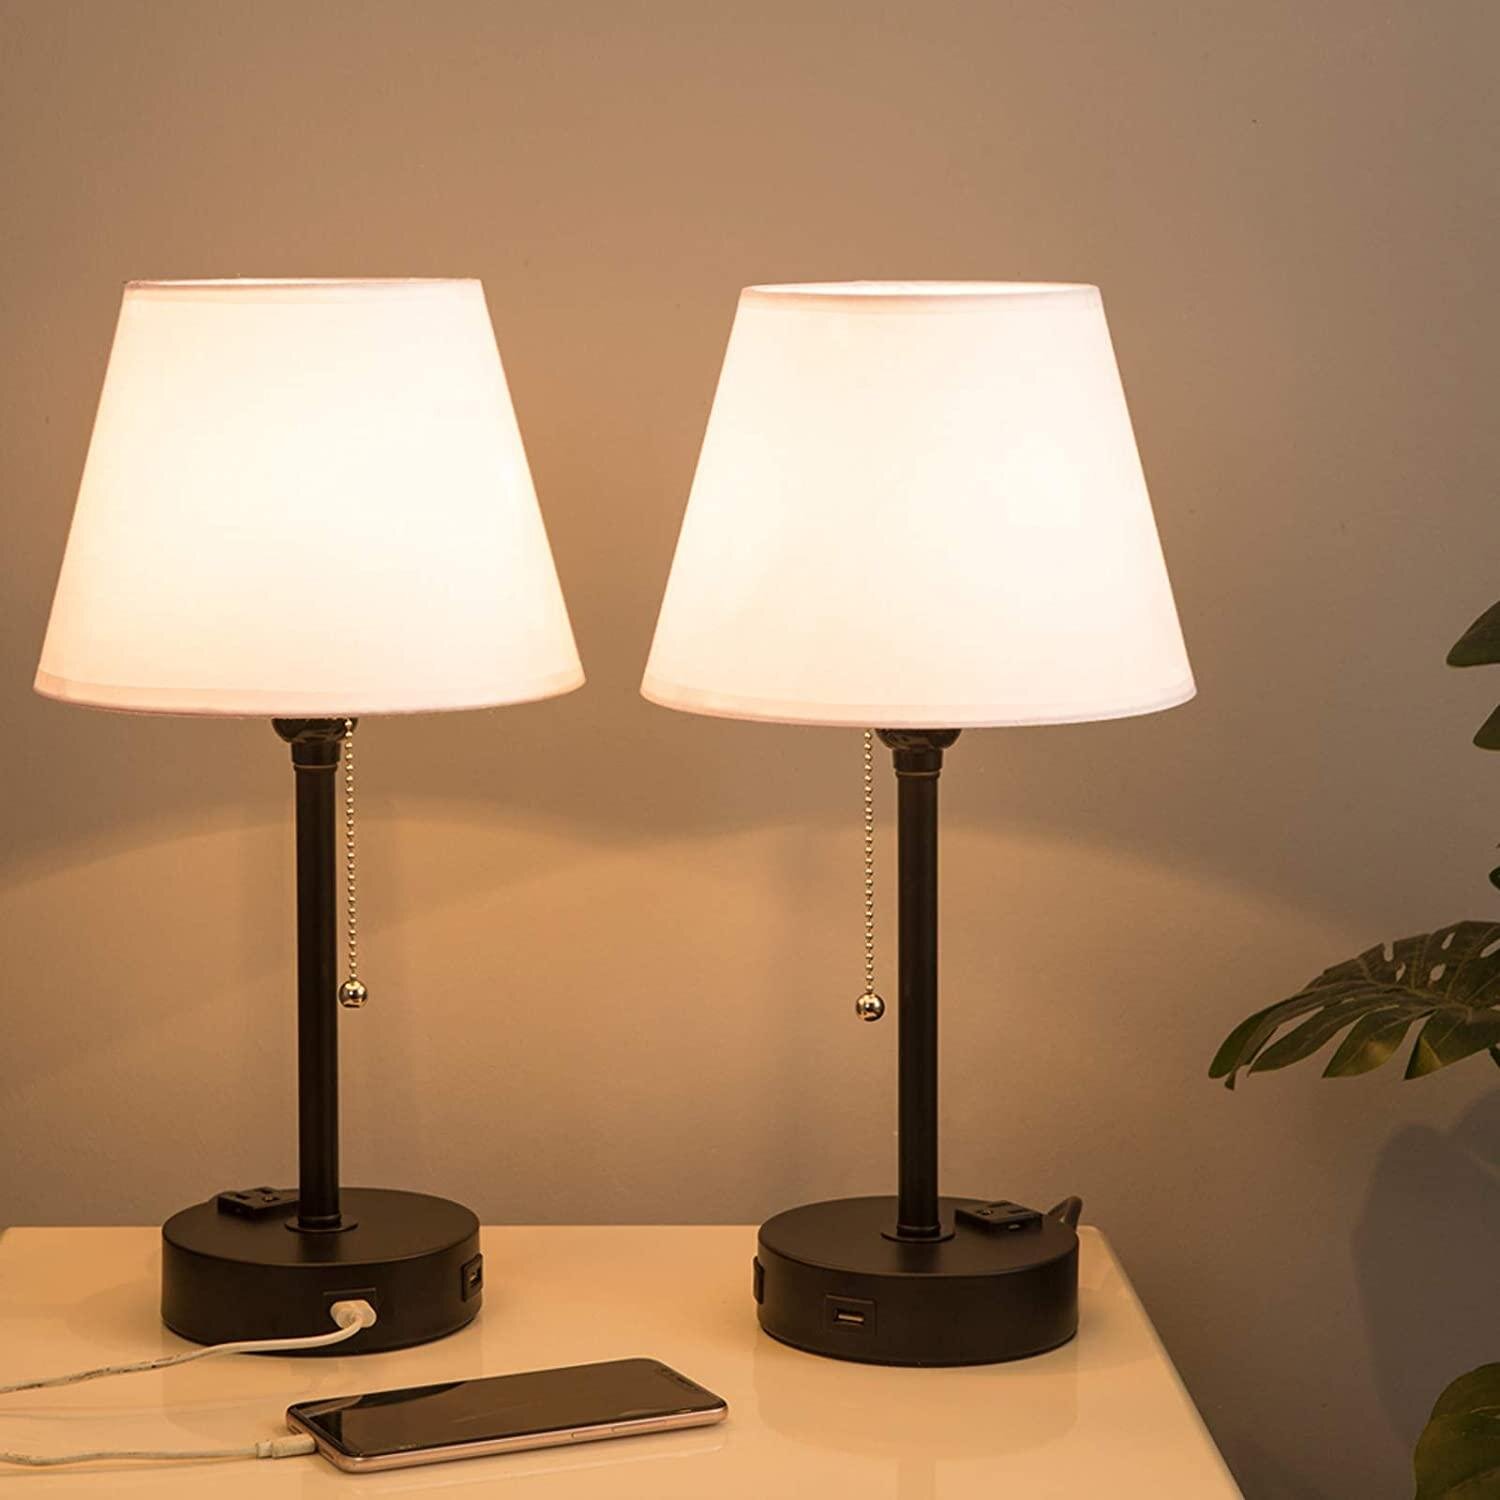 Wooden Table Lamp Edison/Dimmer/Modern Minimalist Loft Design/Edison Bulb/Home Decor/Night Bedside Lamp For Kids Bedroom 